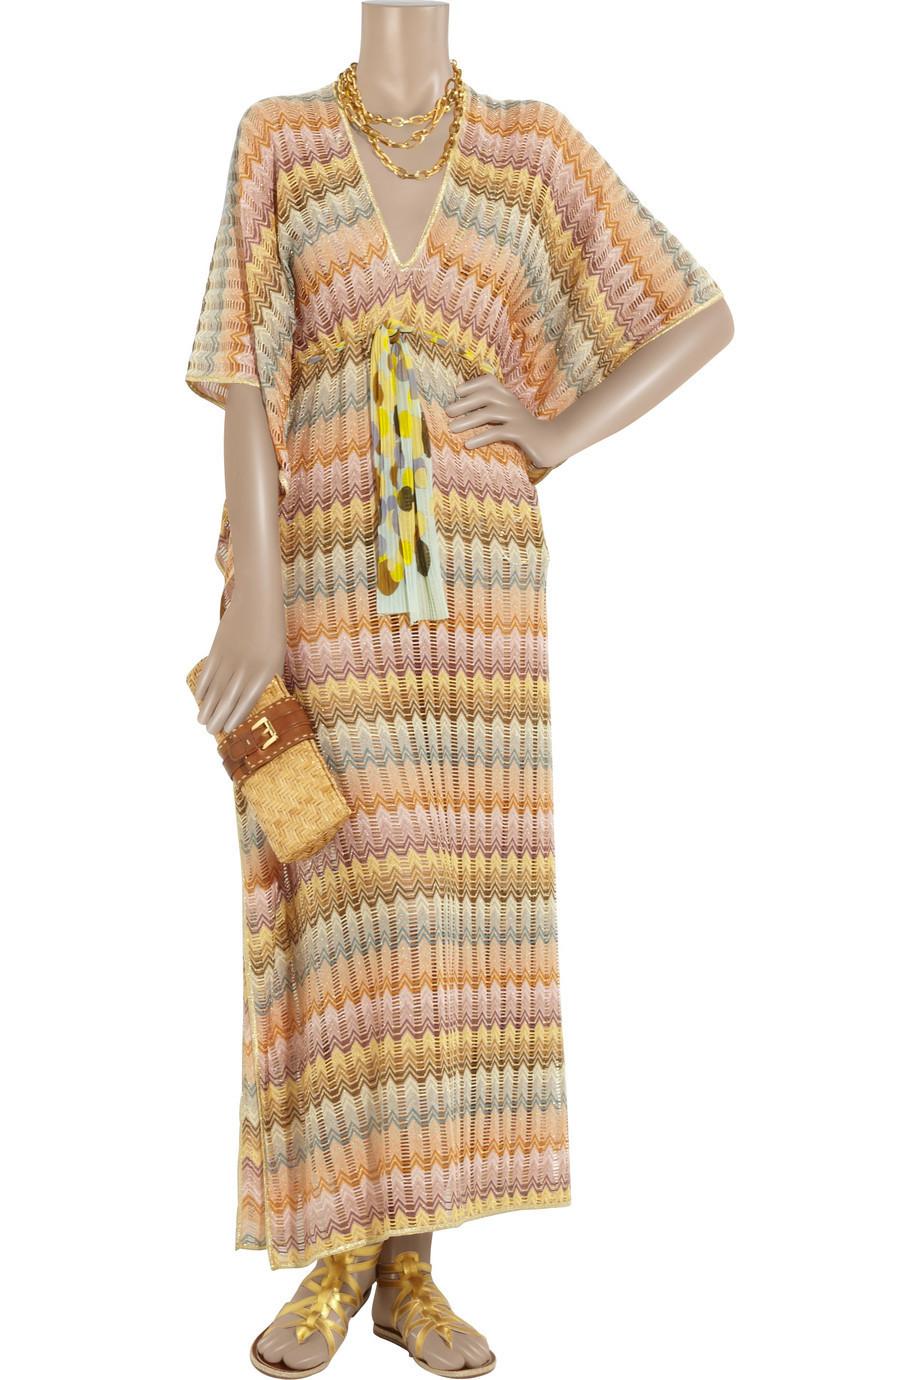 NEW Missoni Gold Metallic Crochet Maxi Knit Kaftan Tunic Dress M 1